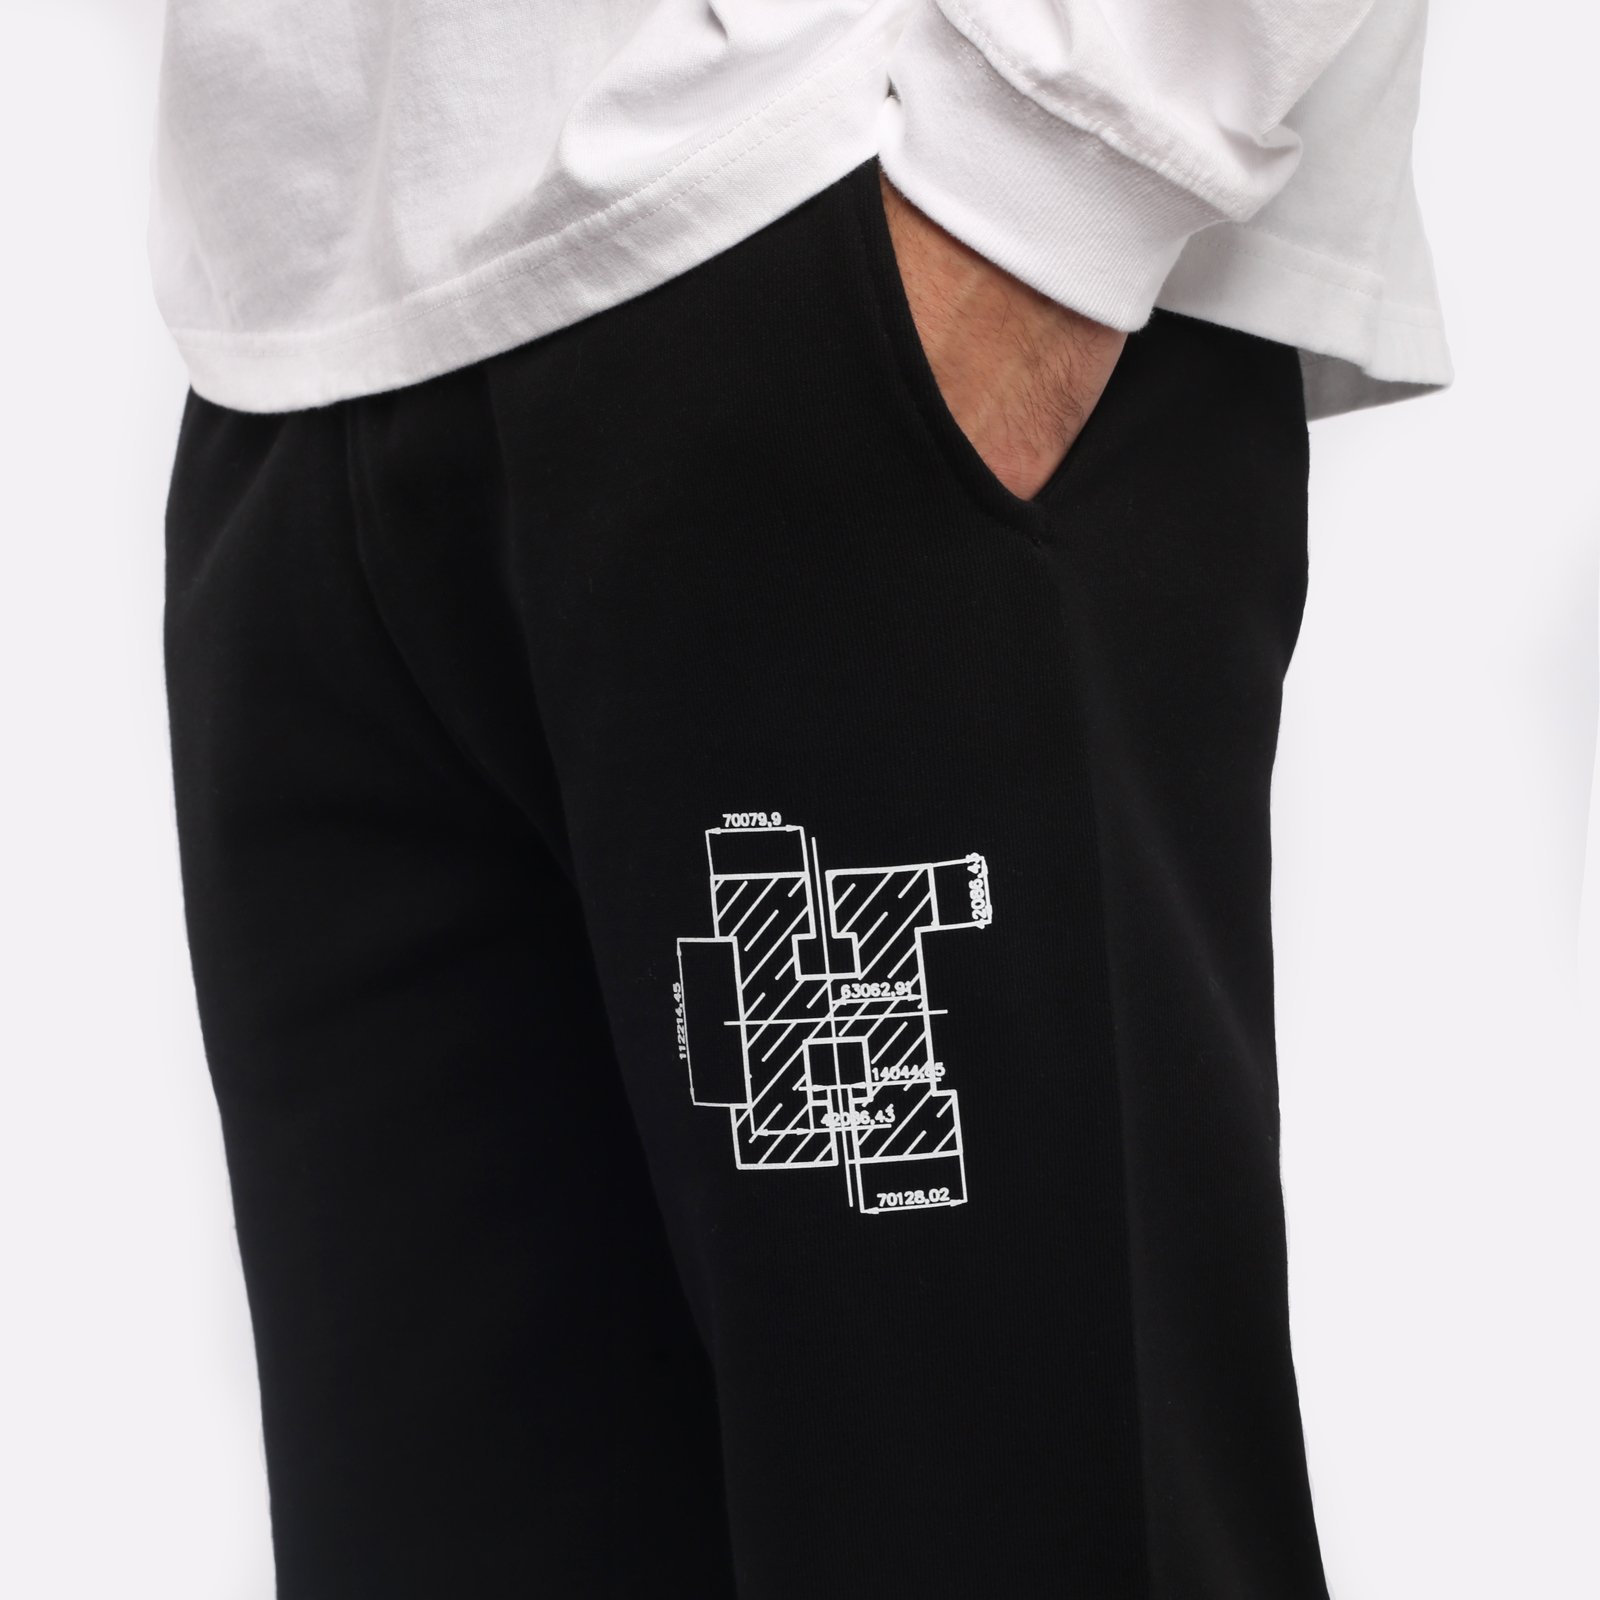 мужские брюки Hard Pants  (hrdpantsblack)  - цена, описание, фото 4